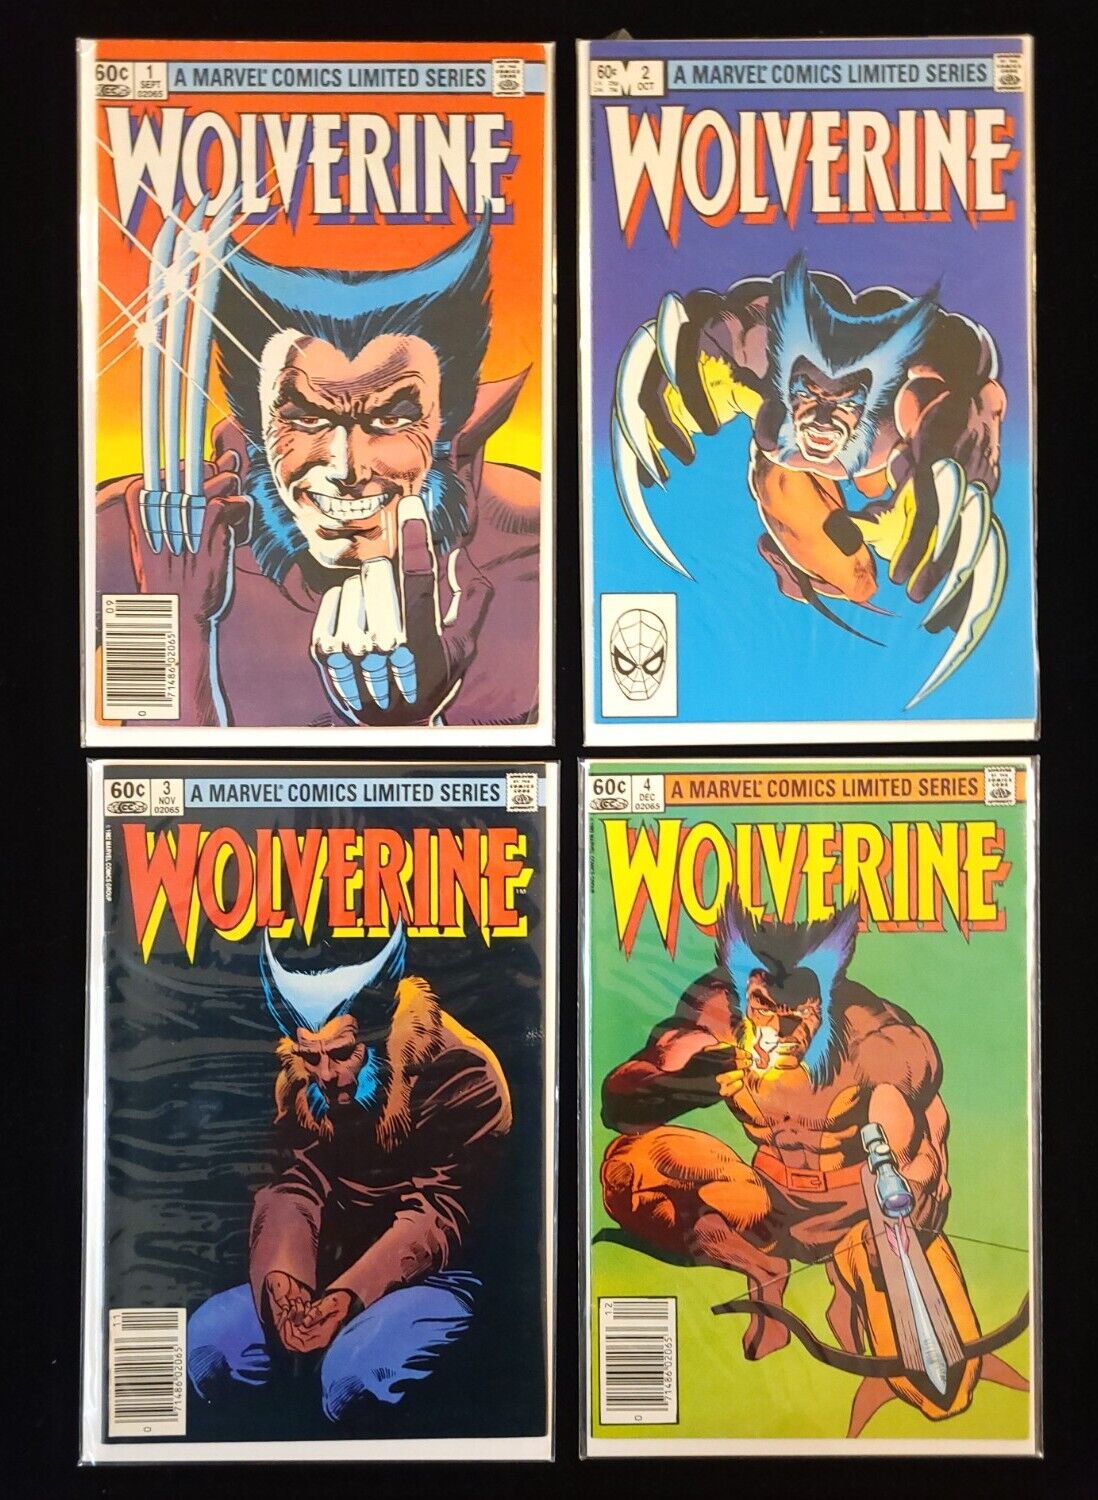 Wolverine #1-4 Limited Series Marvel Comics Nice Set